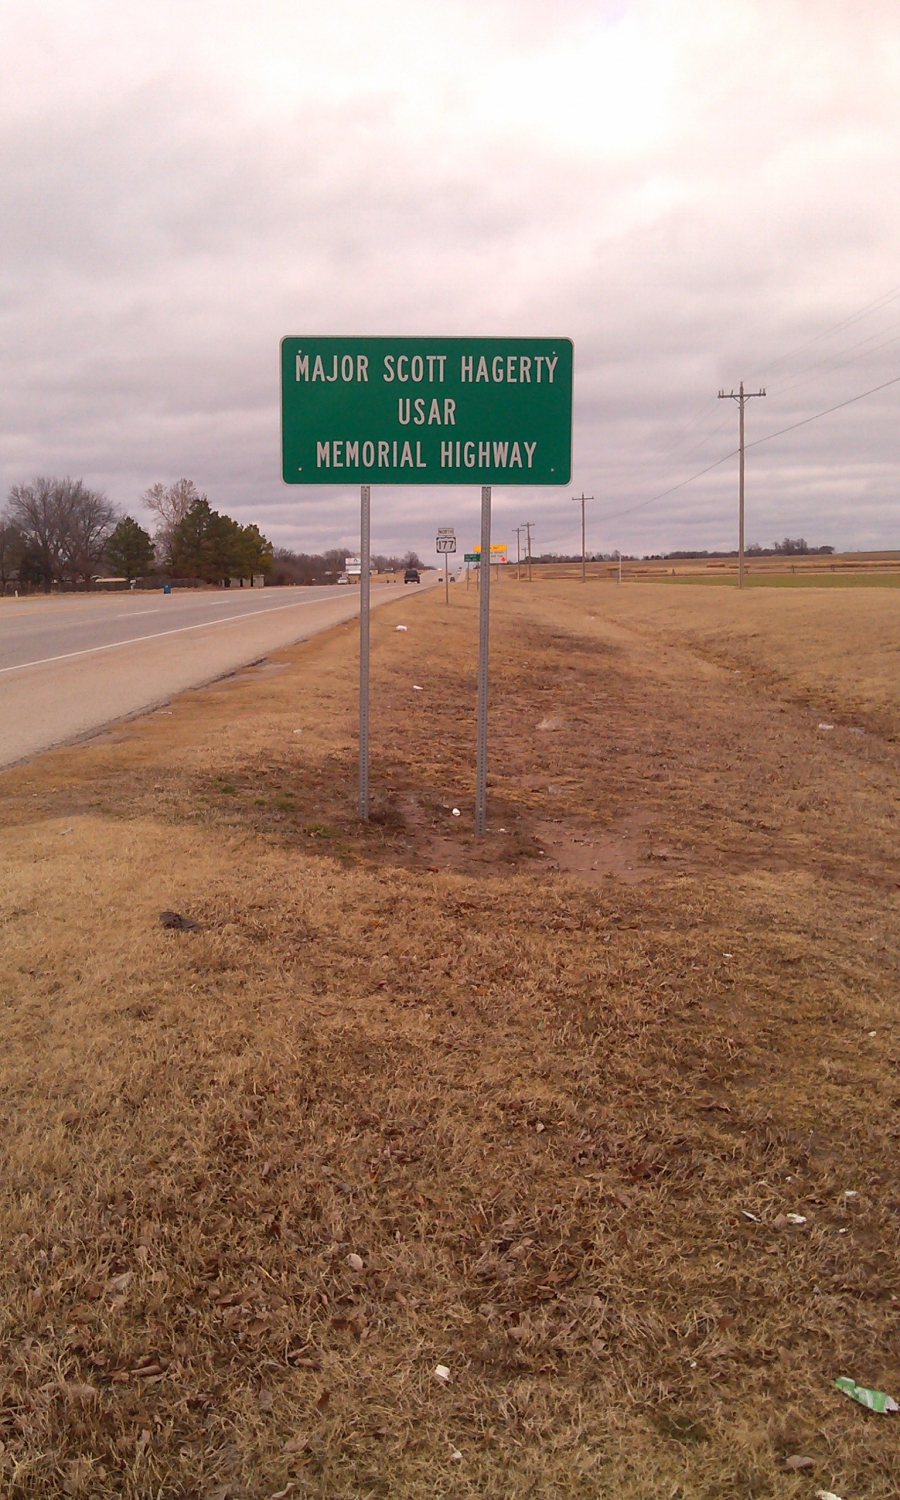 Major Scott Hagerty USAR Memorial Highway